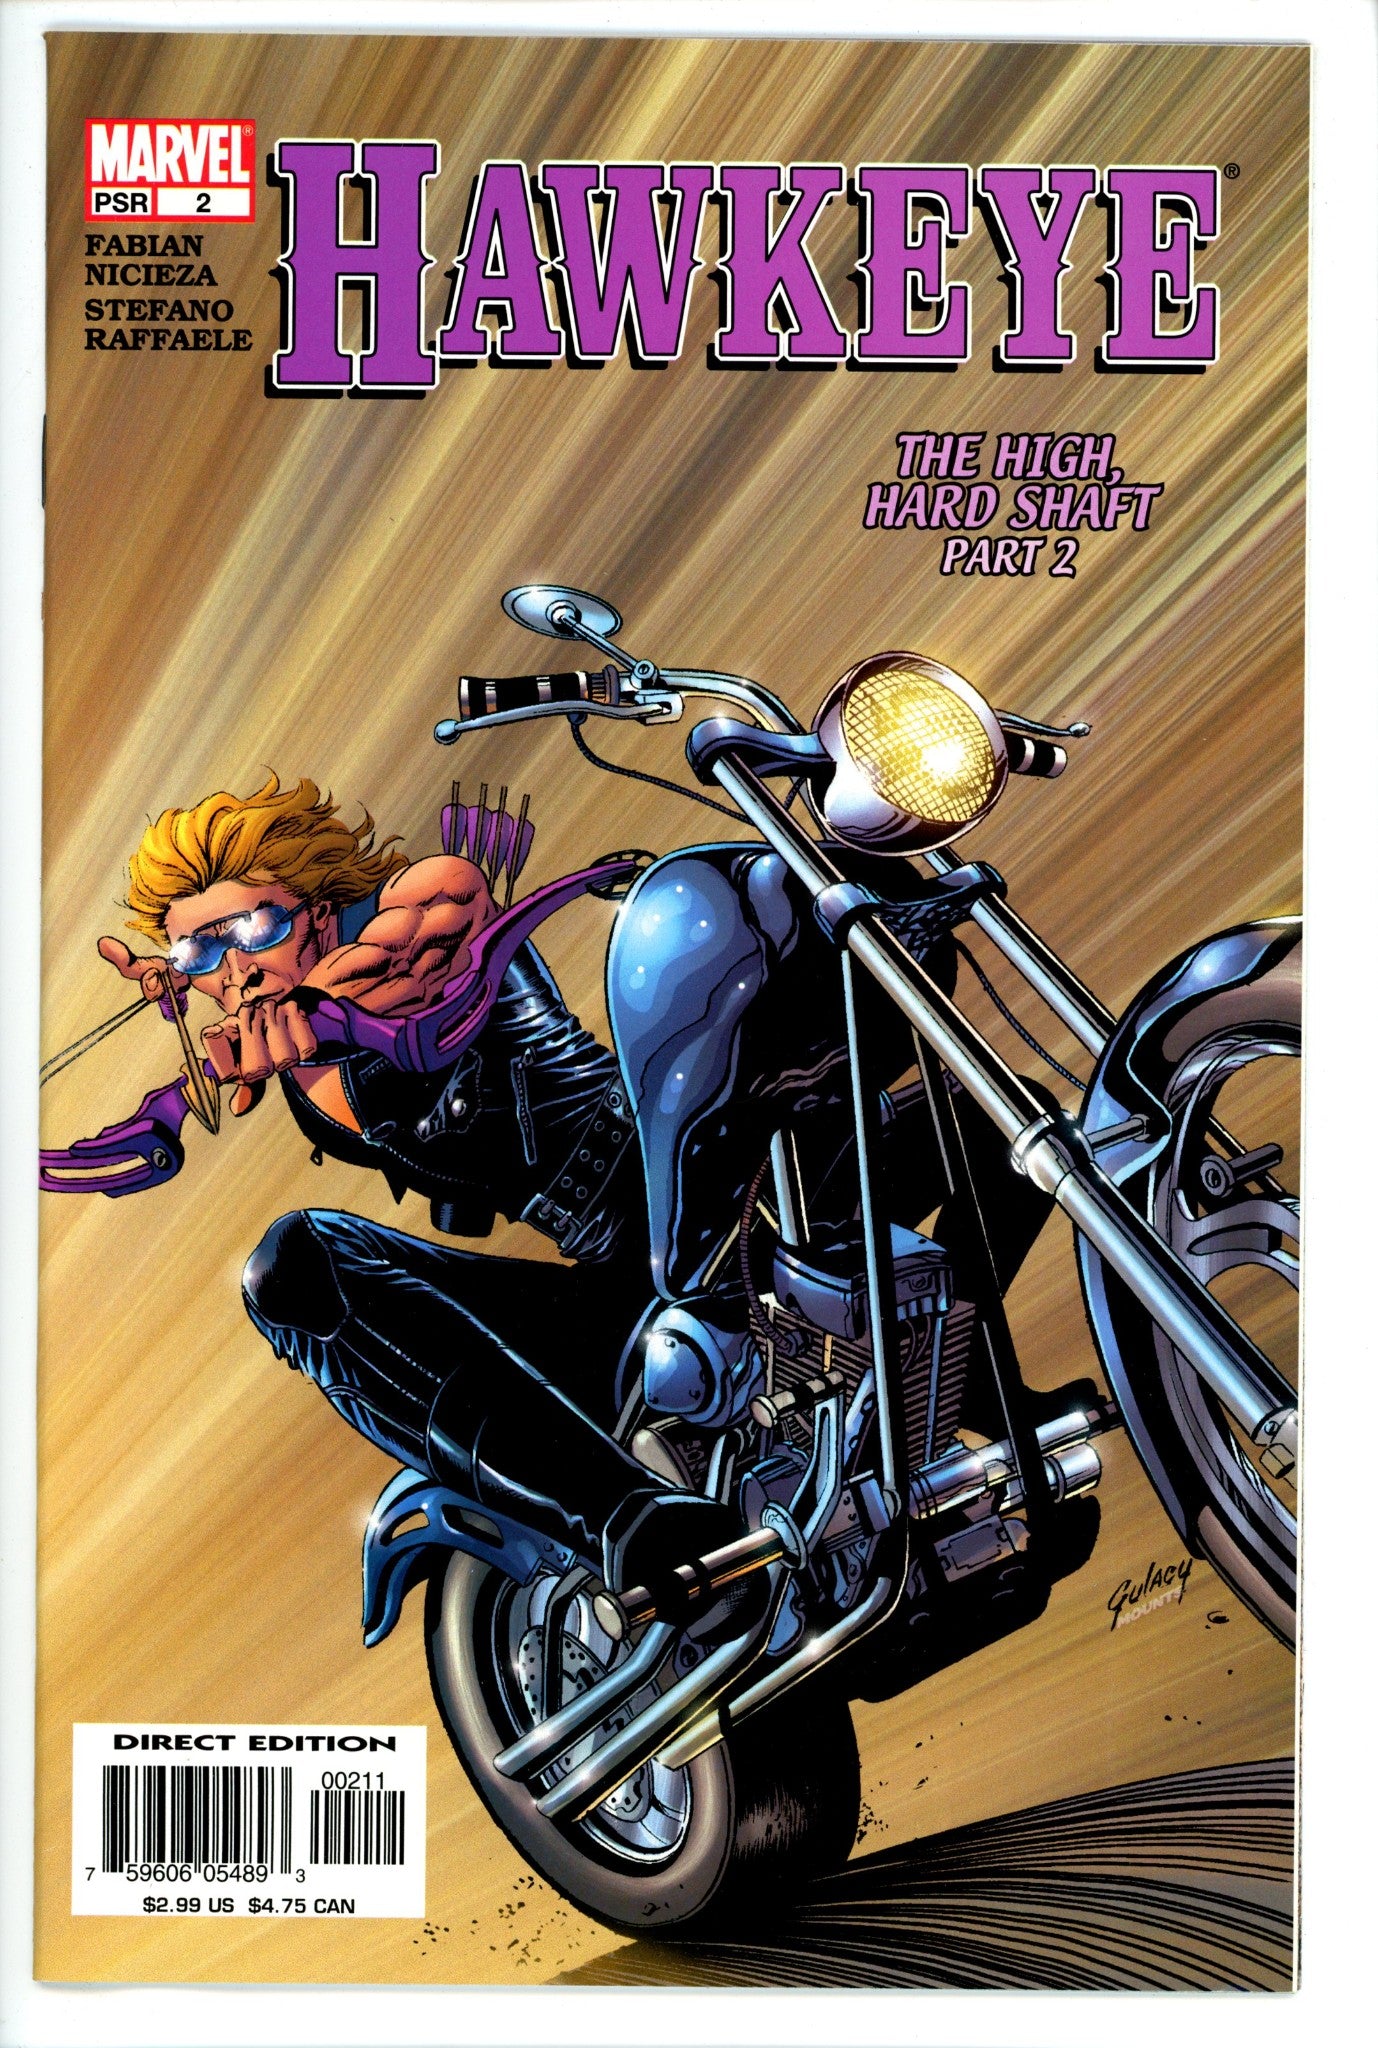 Hawkeye Vol 3 2-Marvel-CaptCan Comics Inc